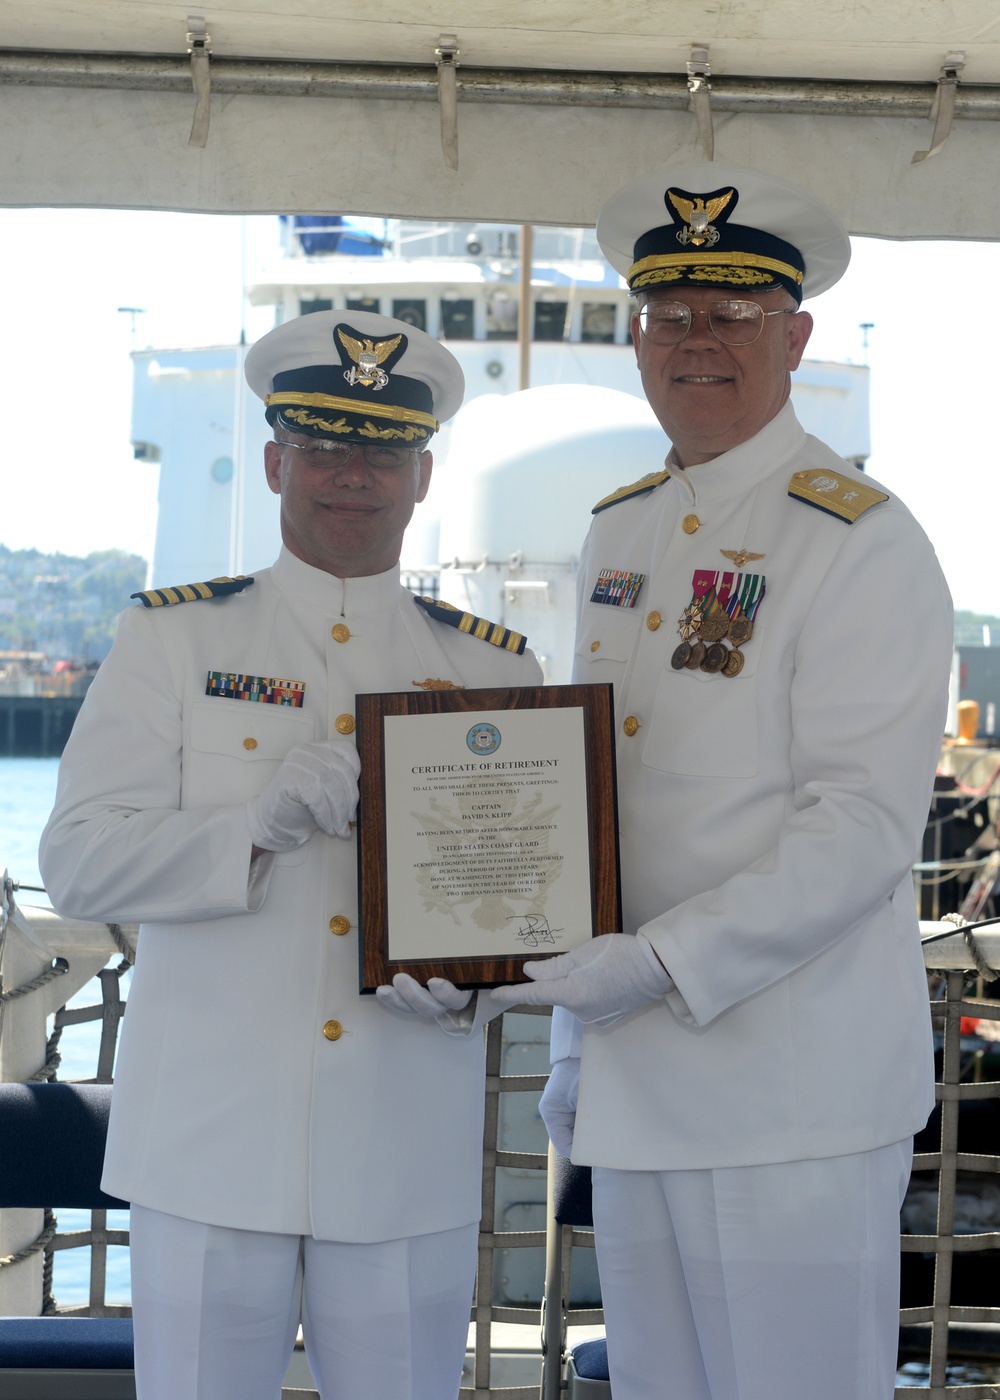 Capt. Klipp retirement ceremony